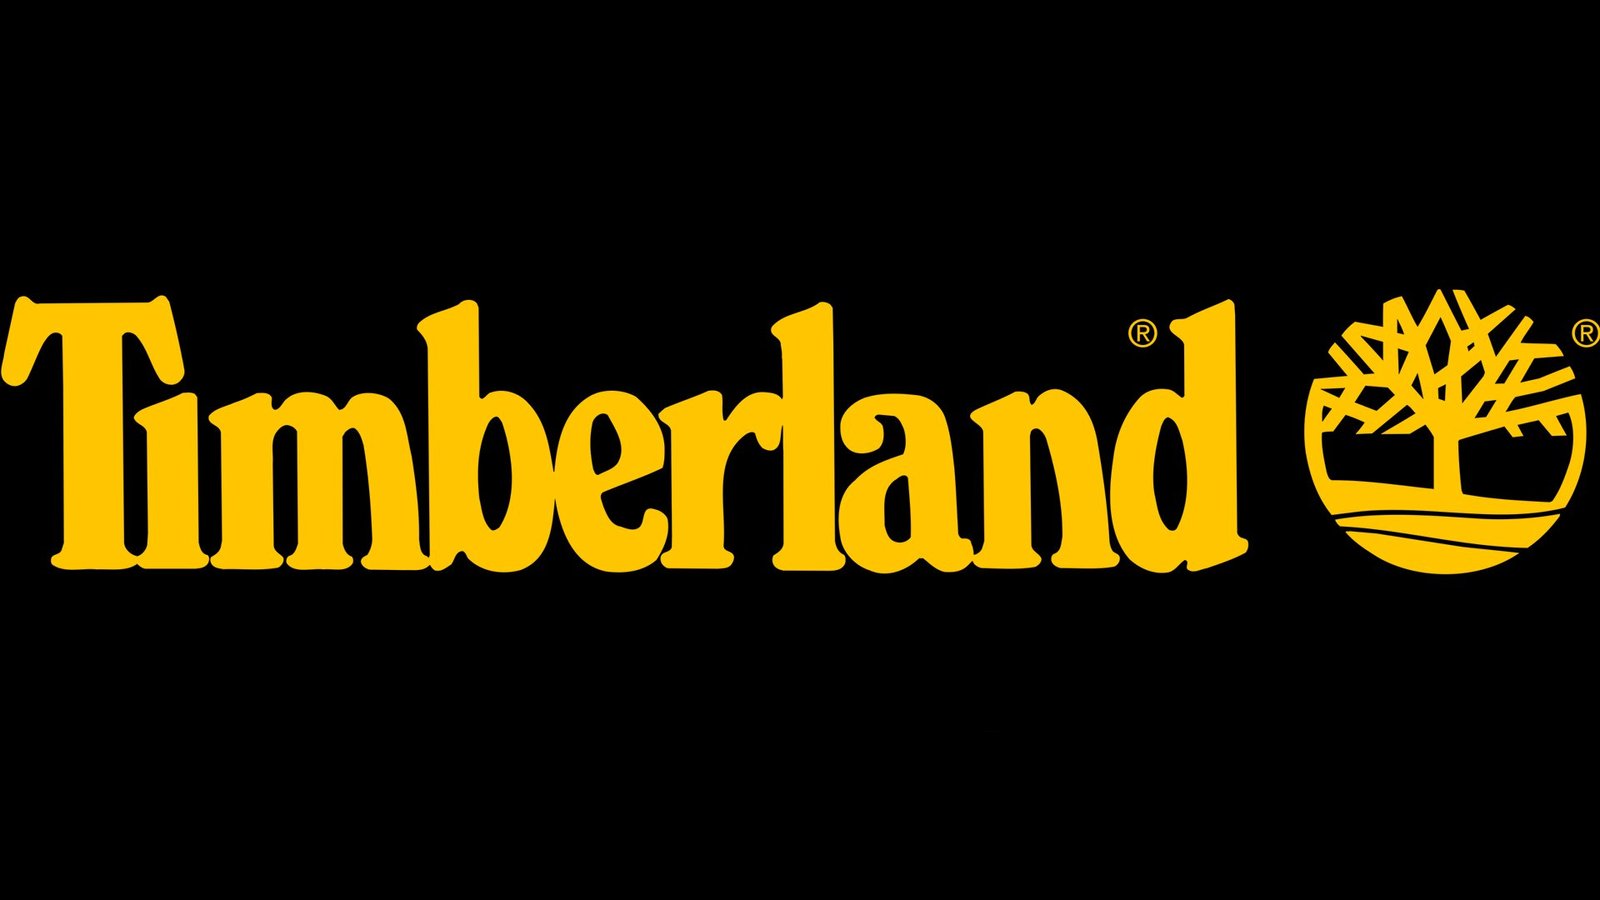 Timberland Coupons & Deals